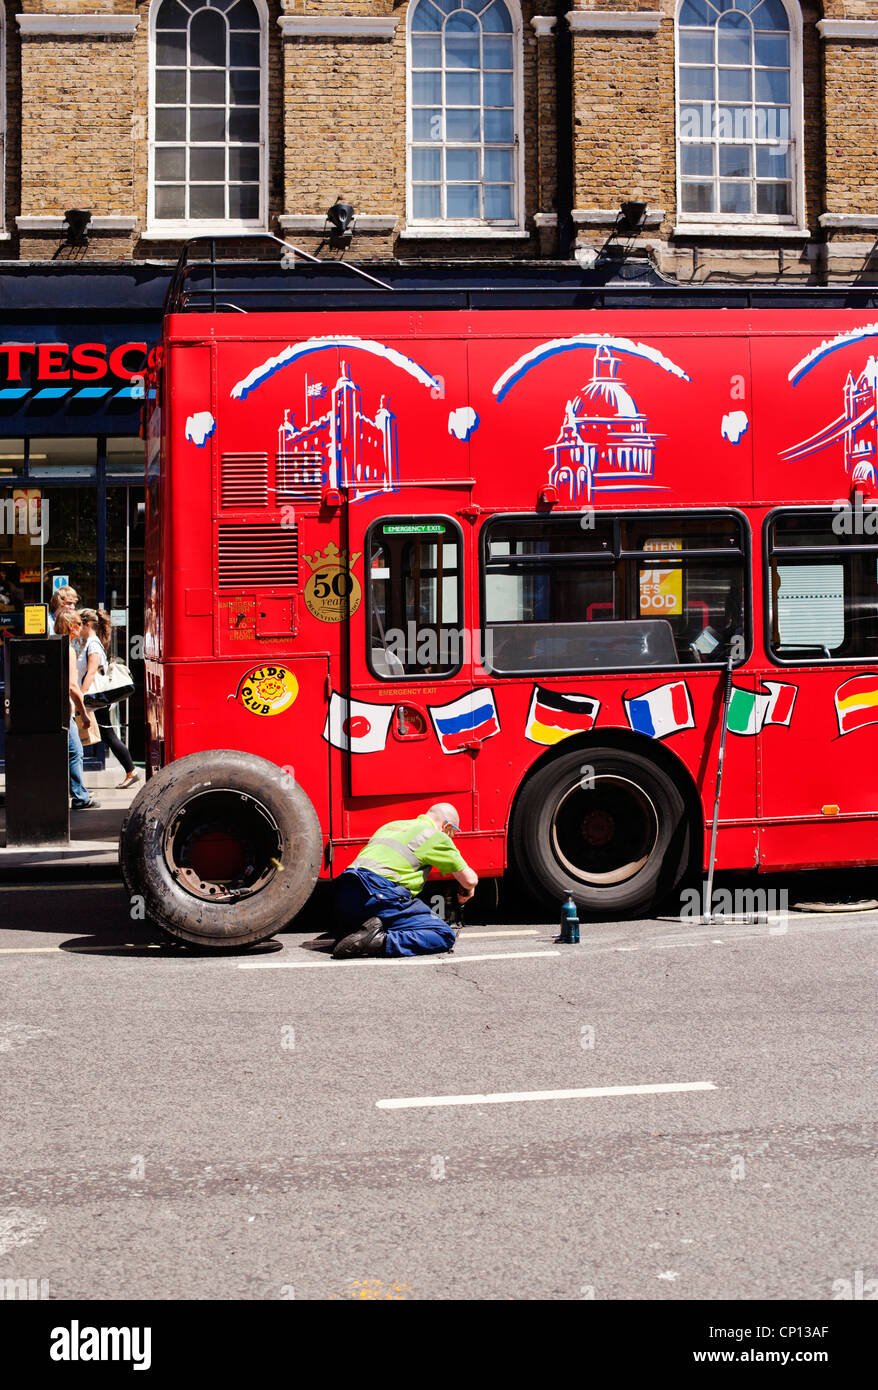 Bus touristique crevaison pneu réparation, Baker Street, Marylebone, Londres, Angleterre, Royaume-Uni, Europe Banque D'Images